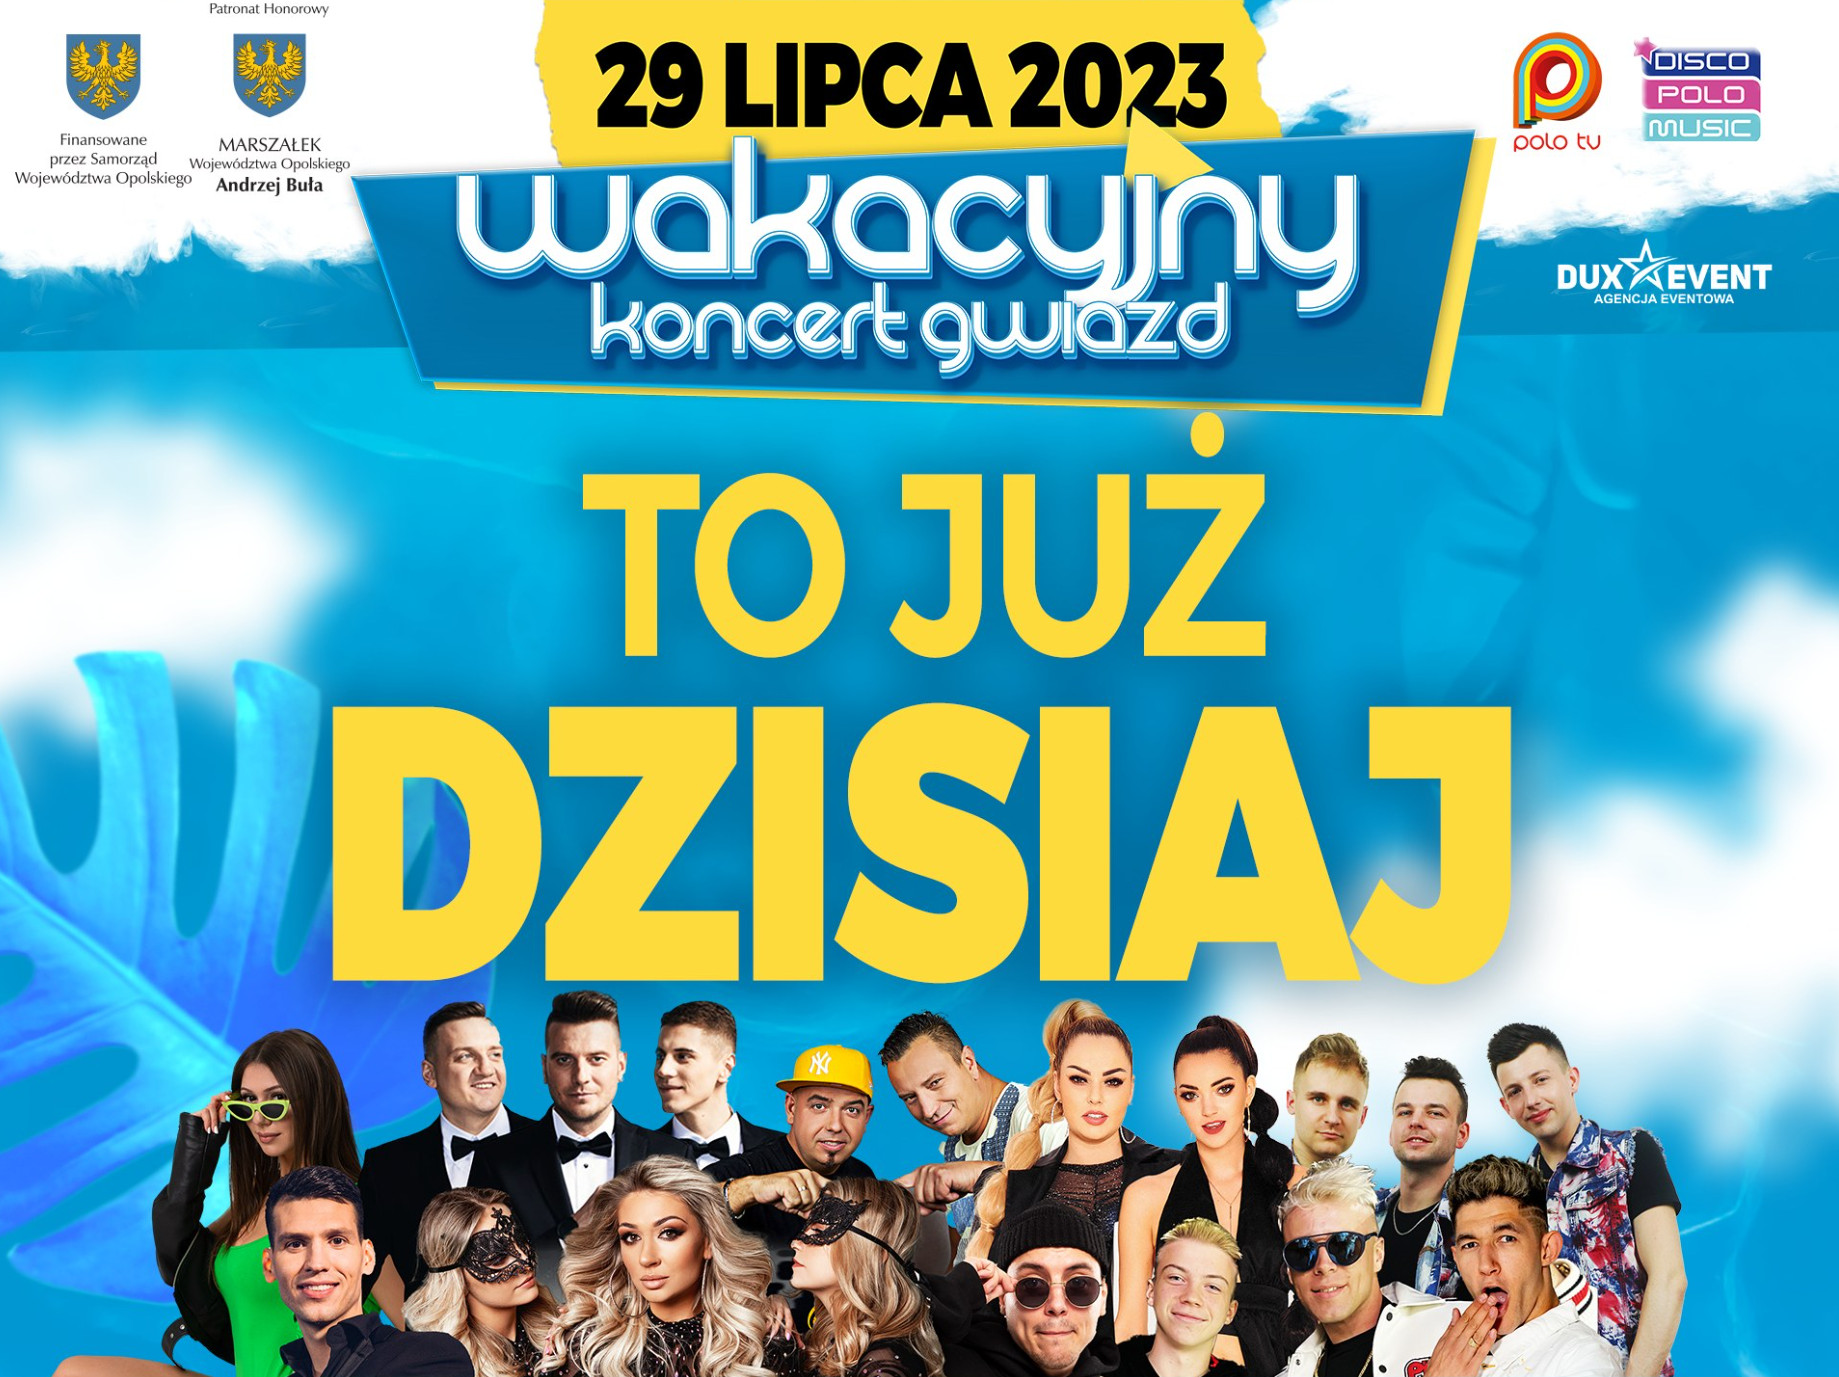 Wakacyjny Koncert Gwiazd Opole już dziś 29 lipca! Wiemy, kto o której wystąpi!